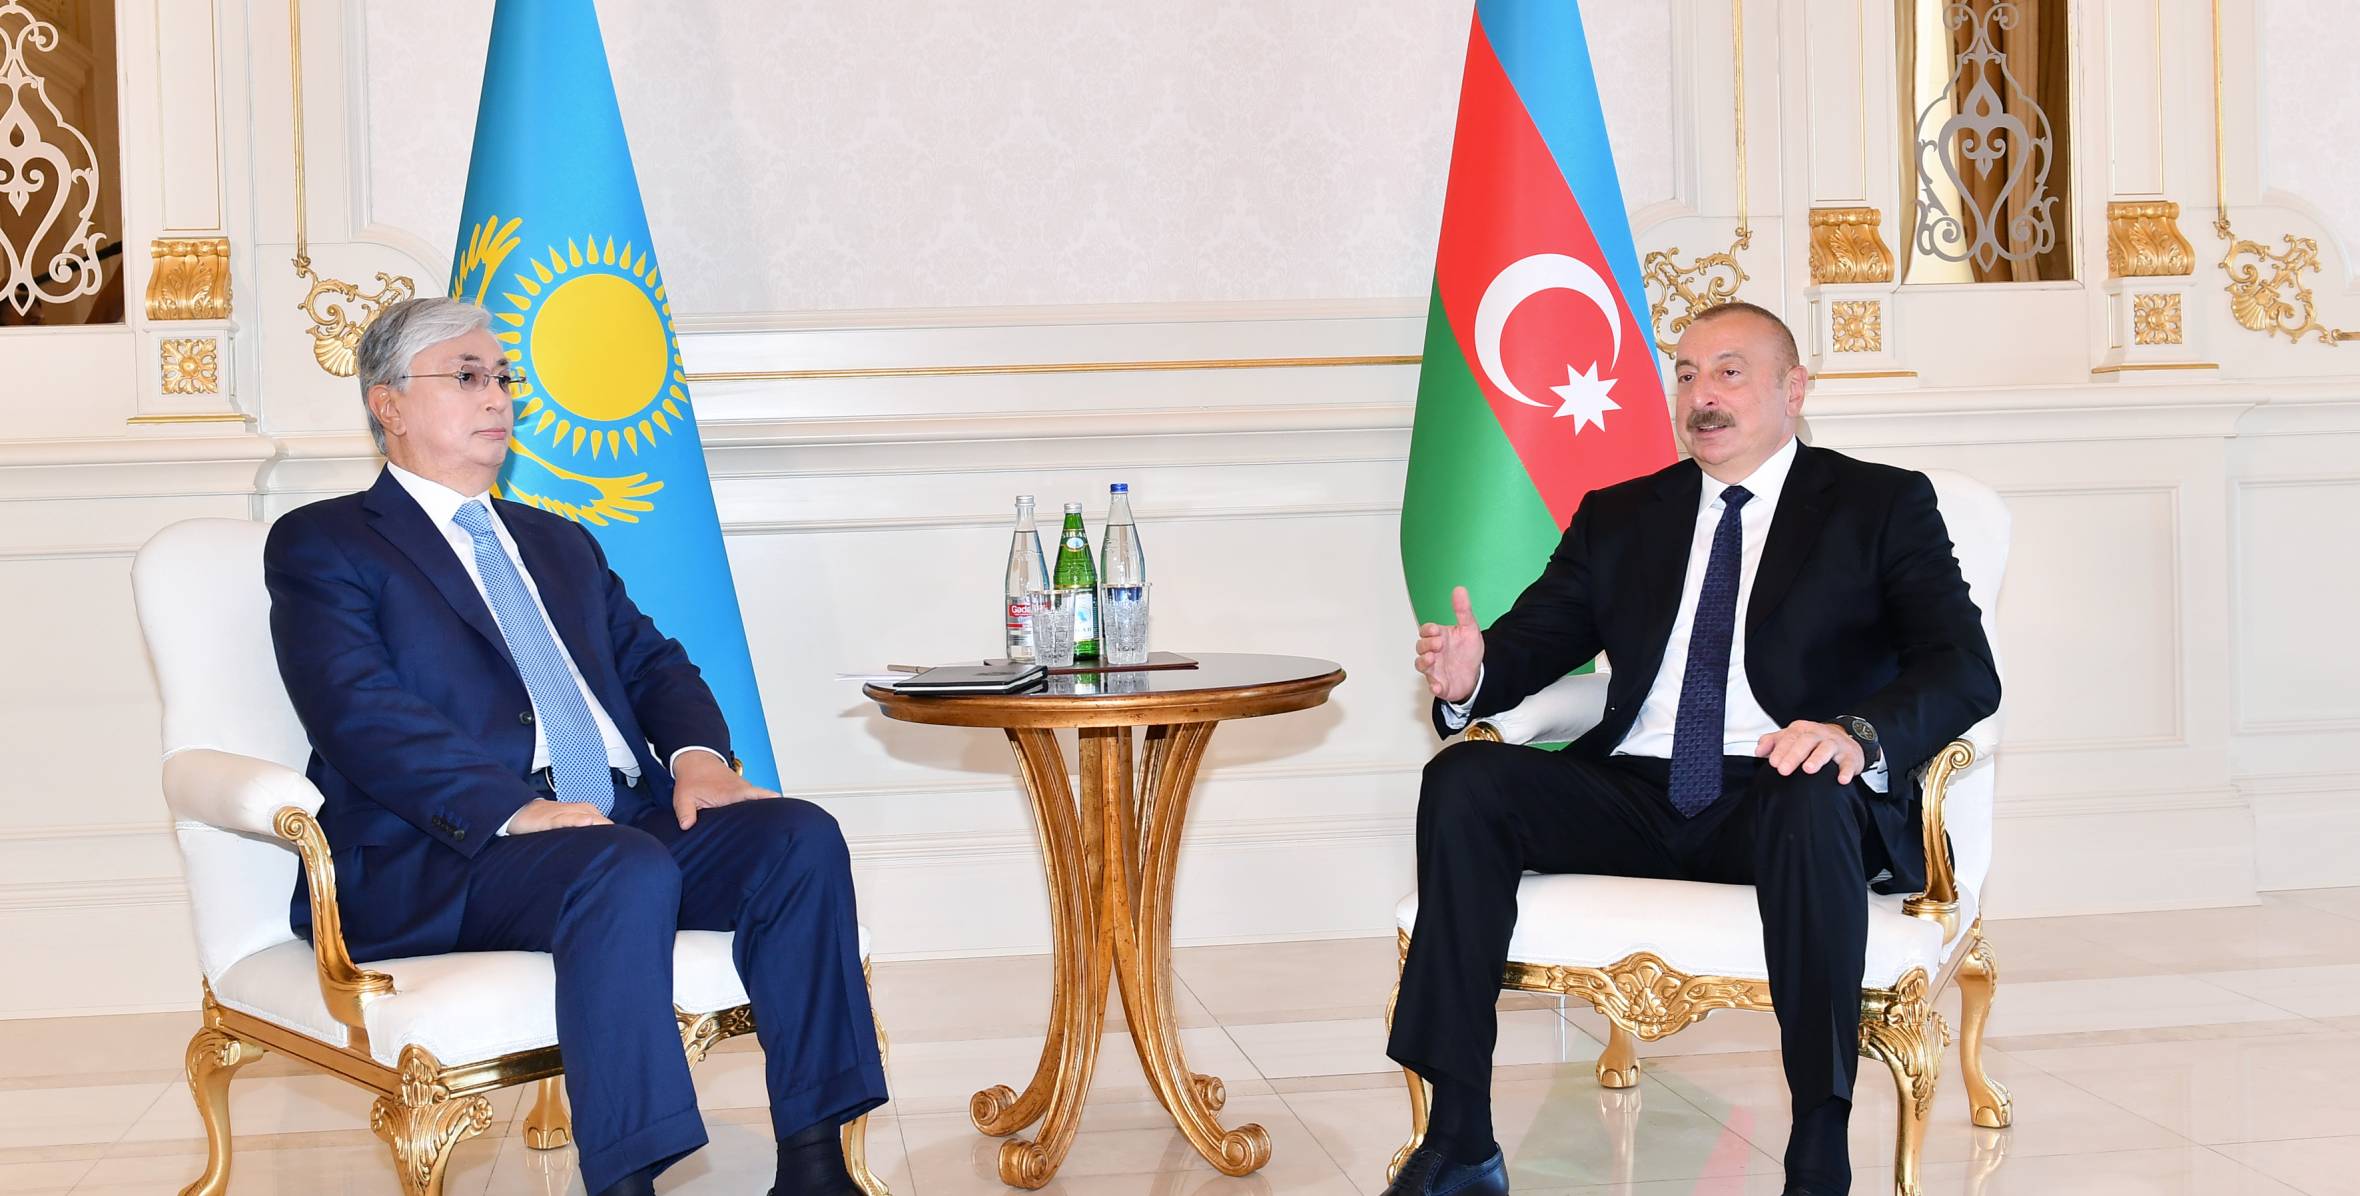 Состоялась встреча президентов Азербайджана и Казахстана один на один